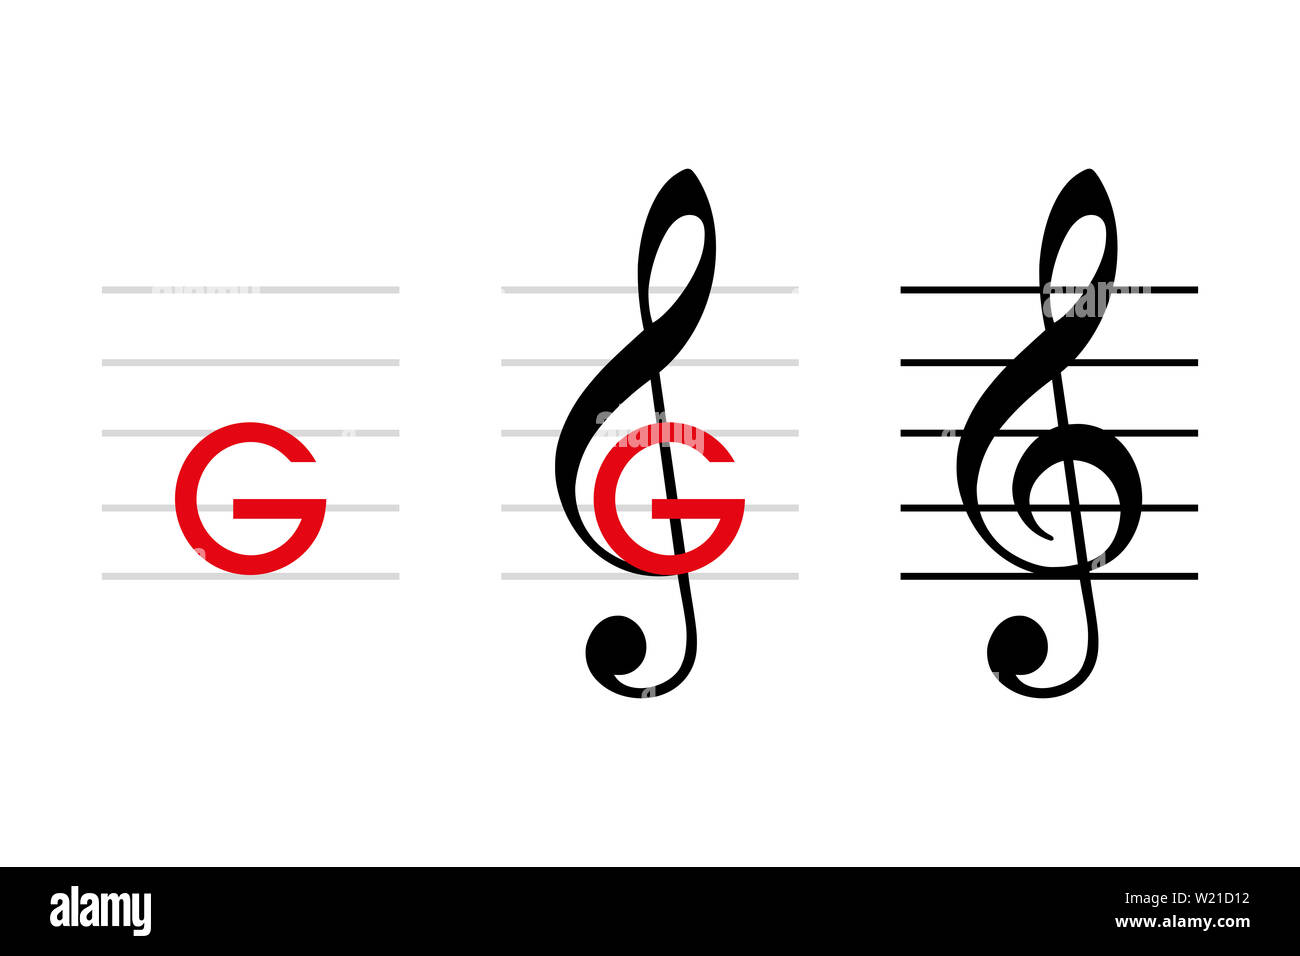 G-Clef Entwicklung, Note G4, auf der Linie, die durch die Wölbung der Notenschlüssel. Violinschlüssel, wenn in der zweiten Zeile platziert. Musikalische Symbol. Stockfoto